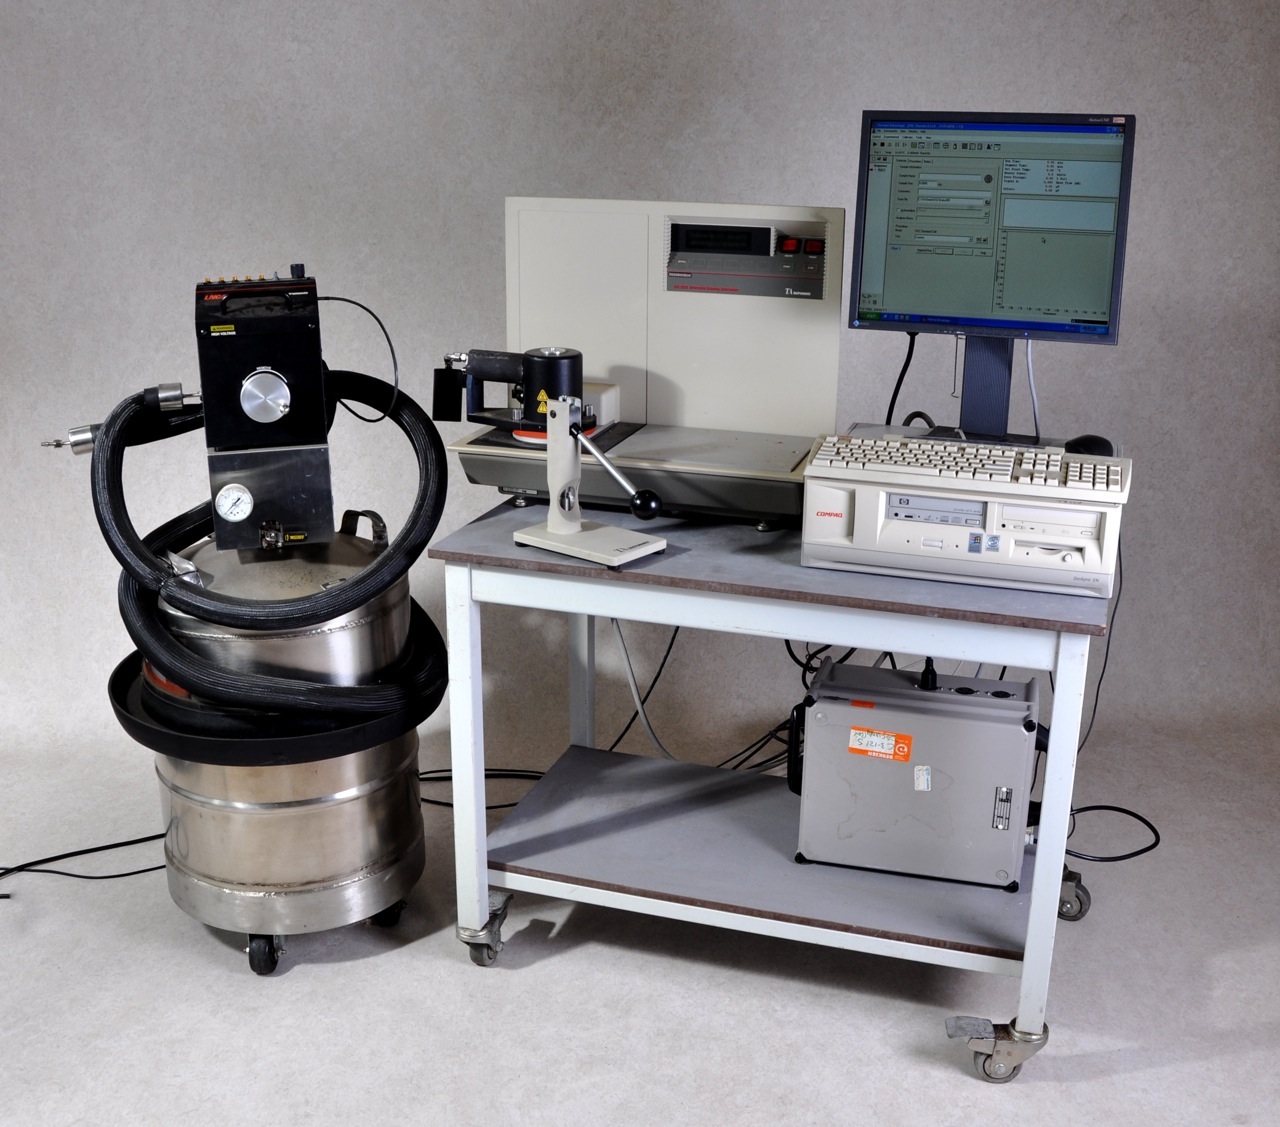 differential scanning calorimetry dsc